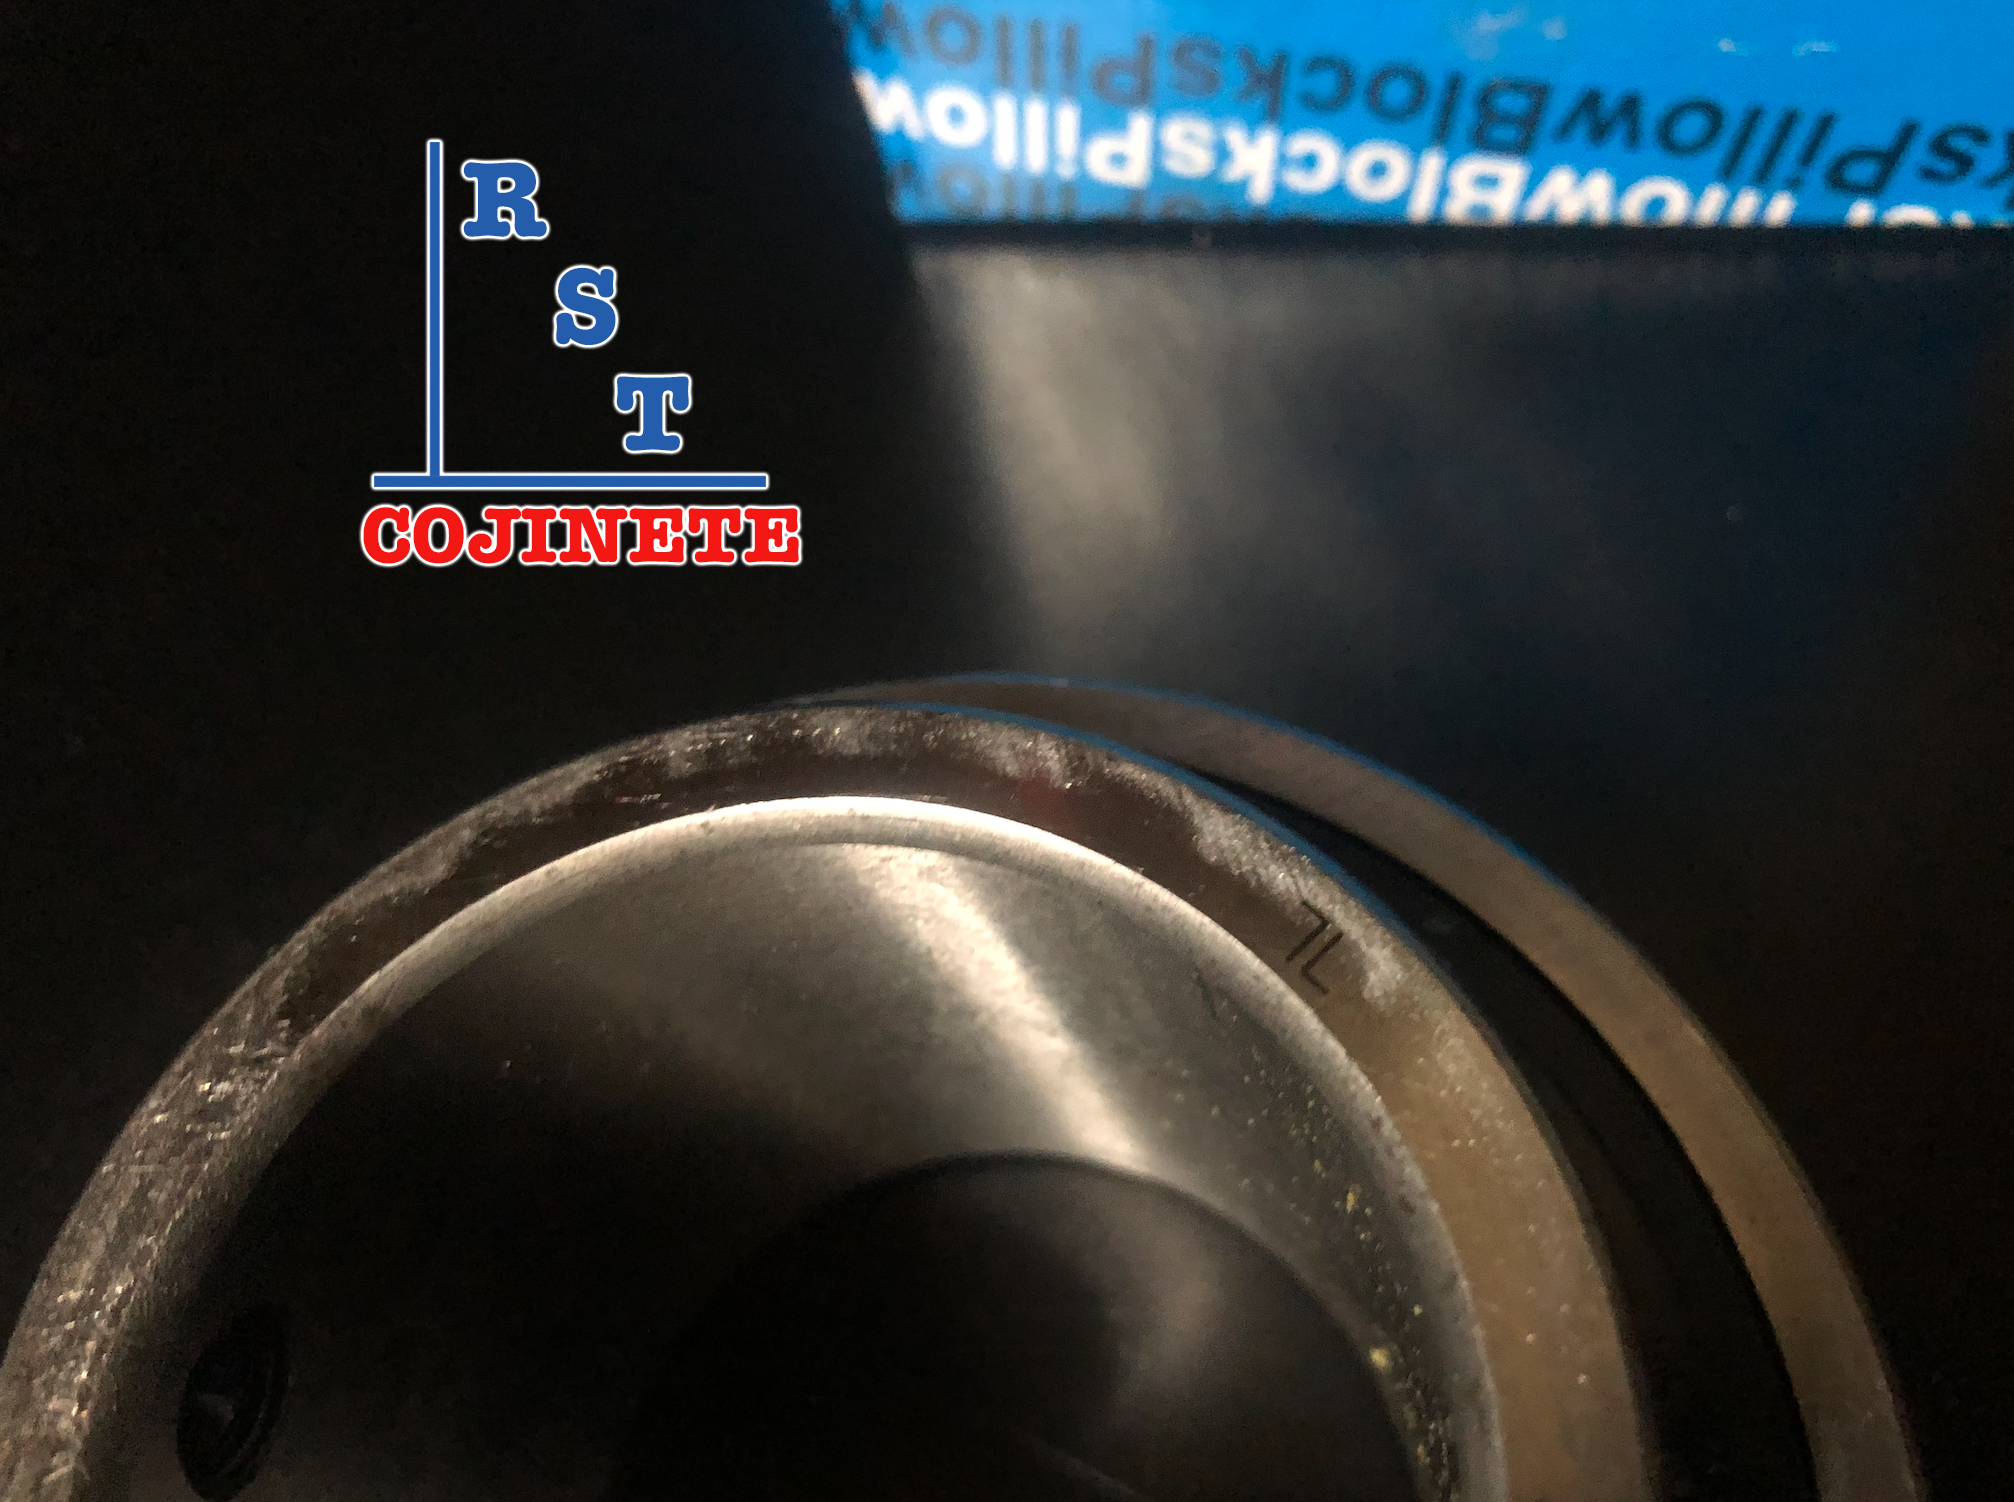 Cojinete insertable UC210-32 | Rodamiento para eje de 2" rígido de bolas con sello de hule para chumacera